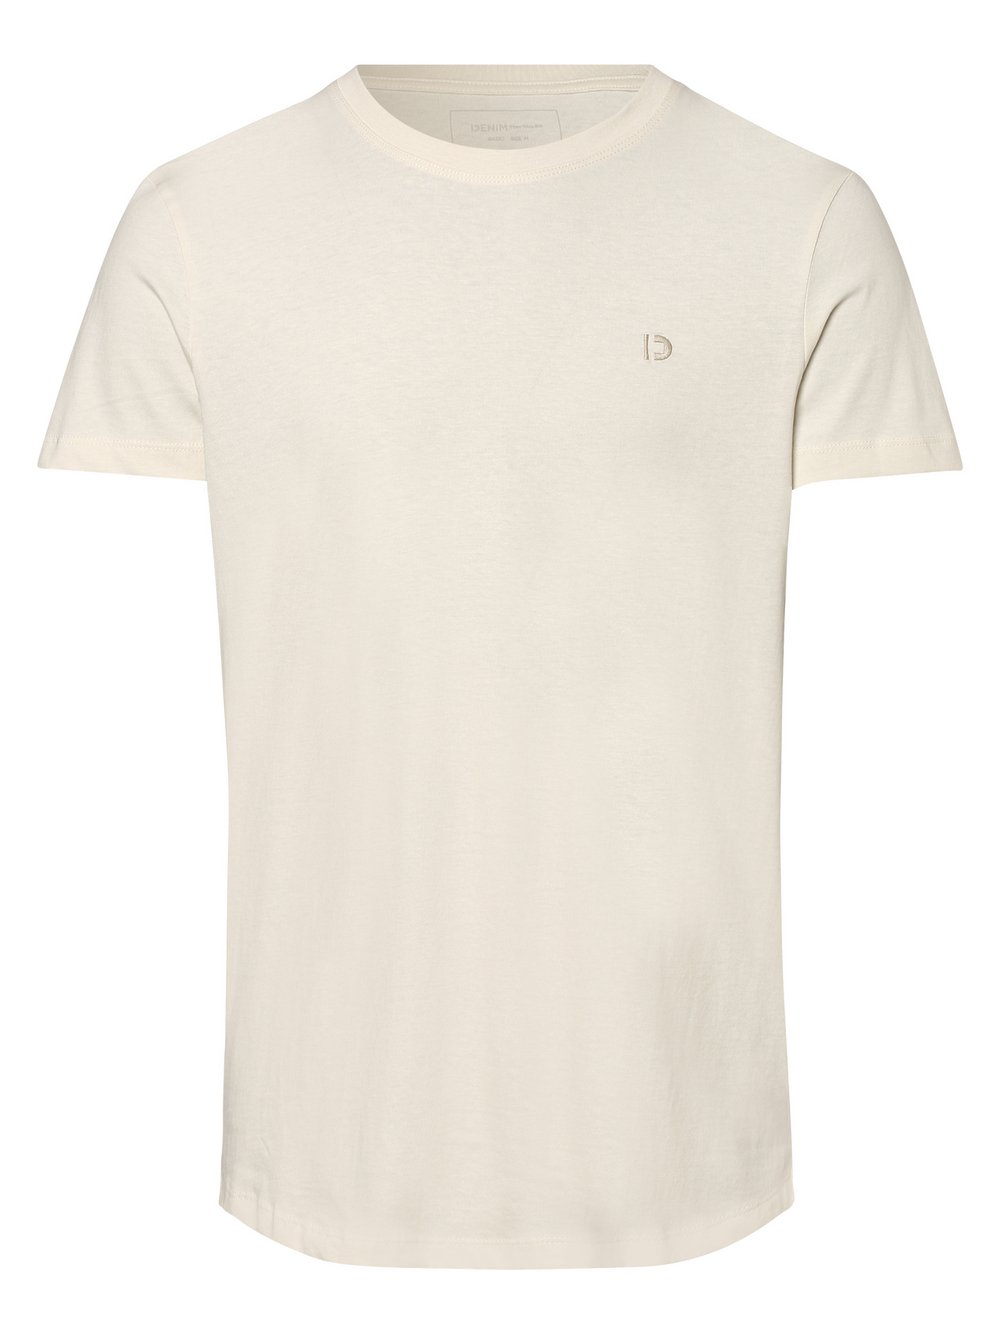 Tom Tailor Denim - T-shirt męski, biały|beżowy